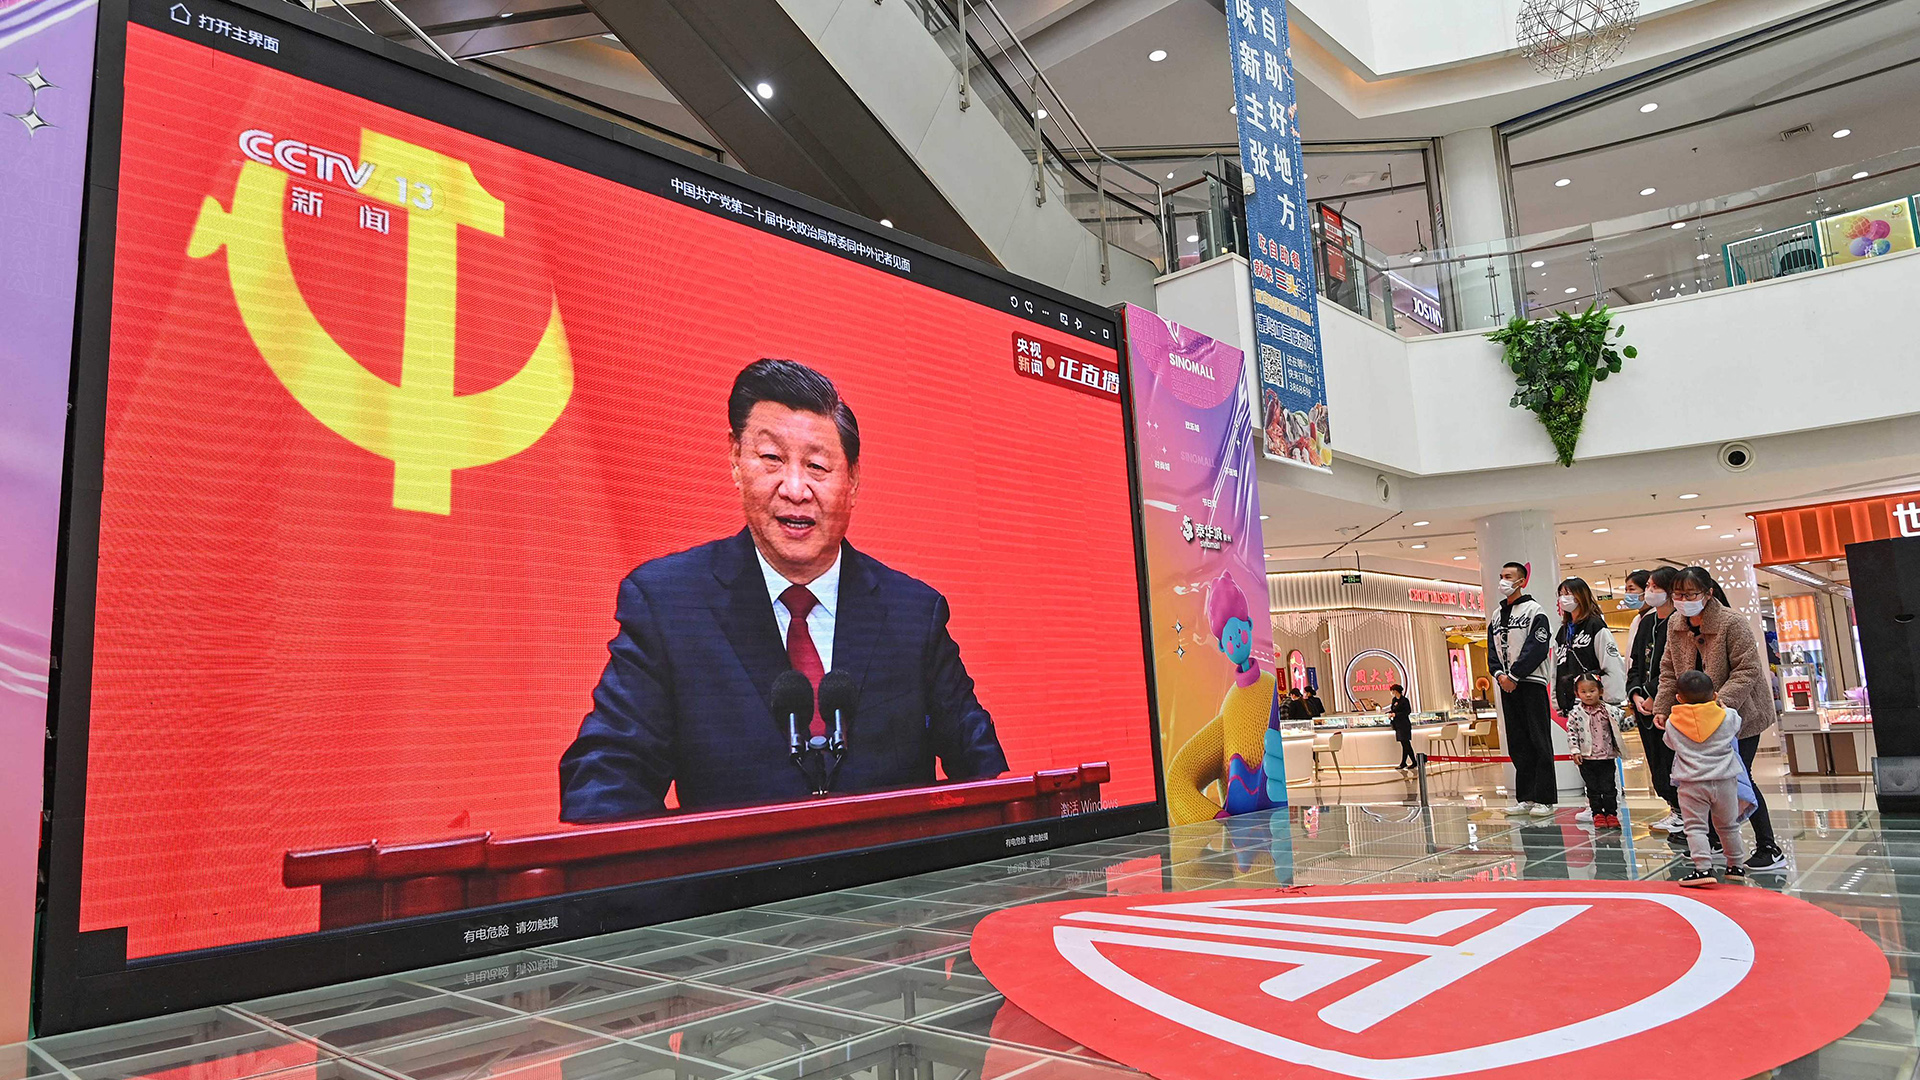 Xi zementiert seine Macht und steht vor großen Aufgaben